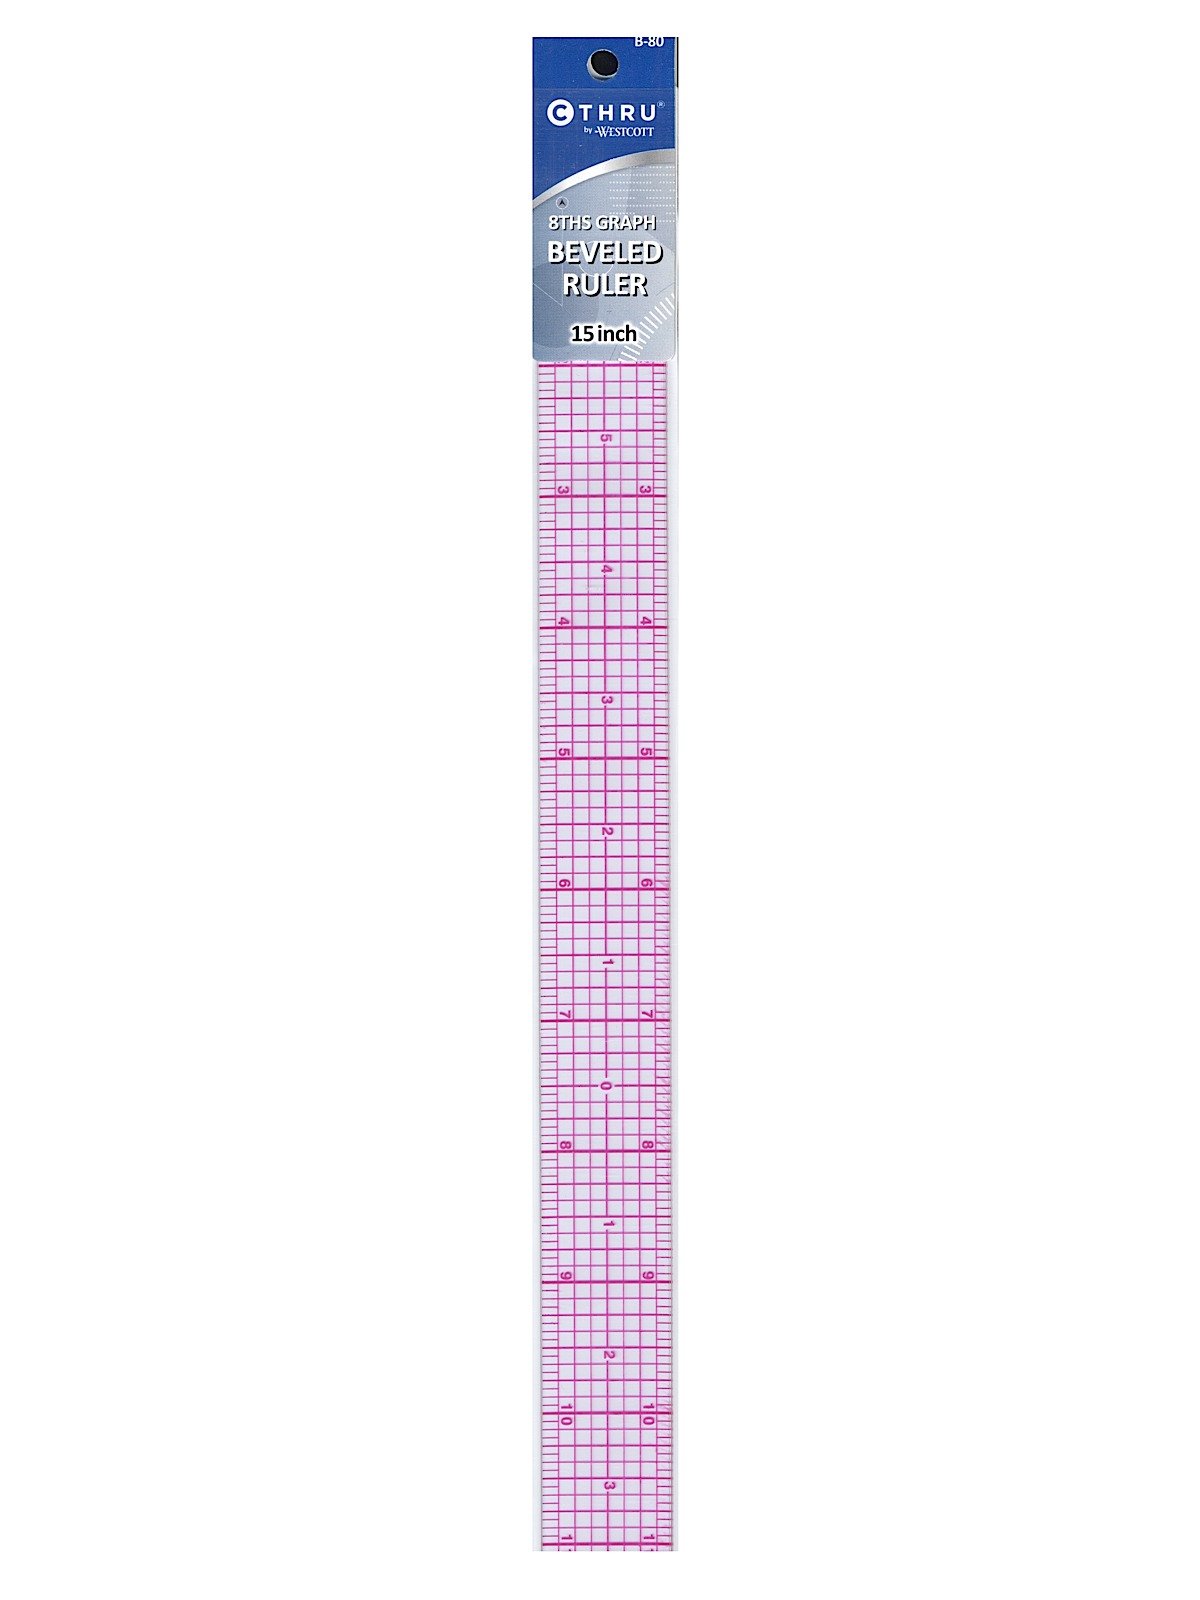 24 Transparent Ruler #808B-A - 24 inch x 2 inch